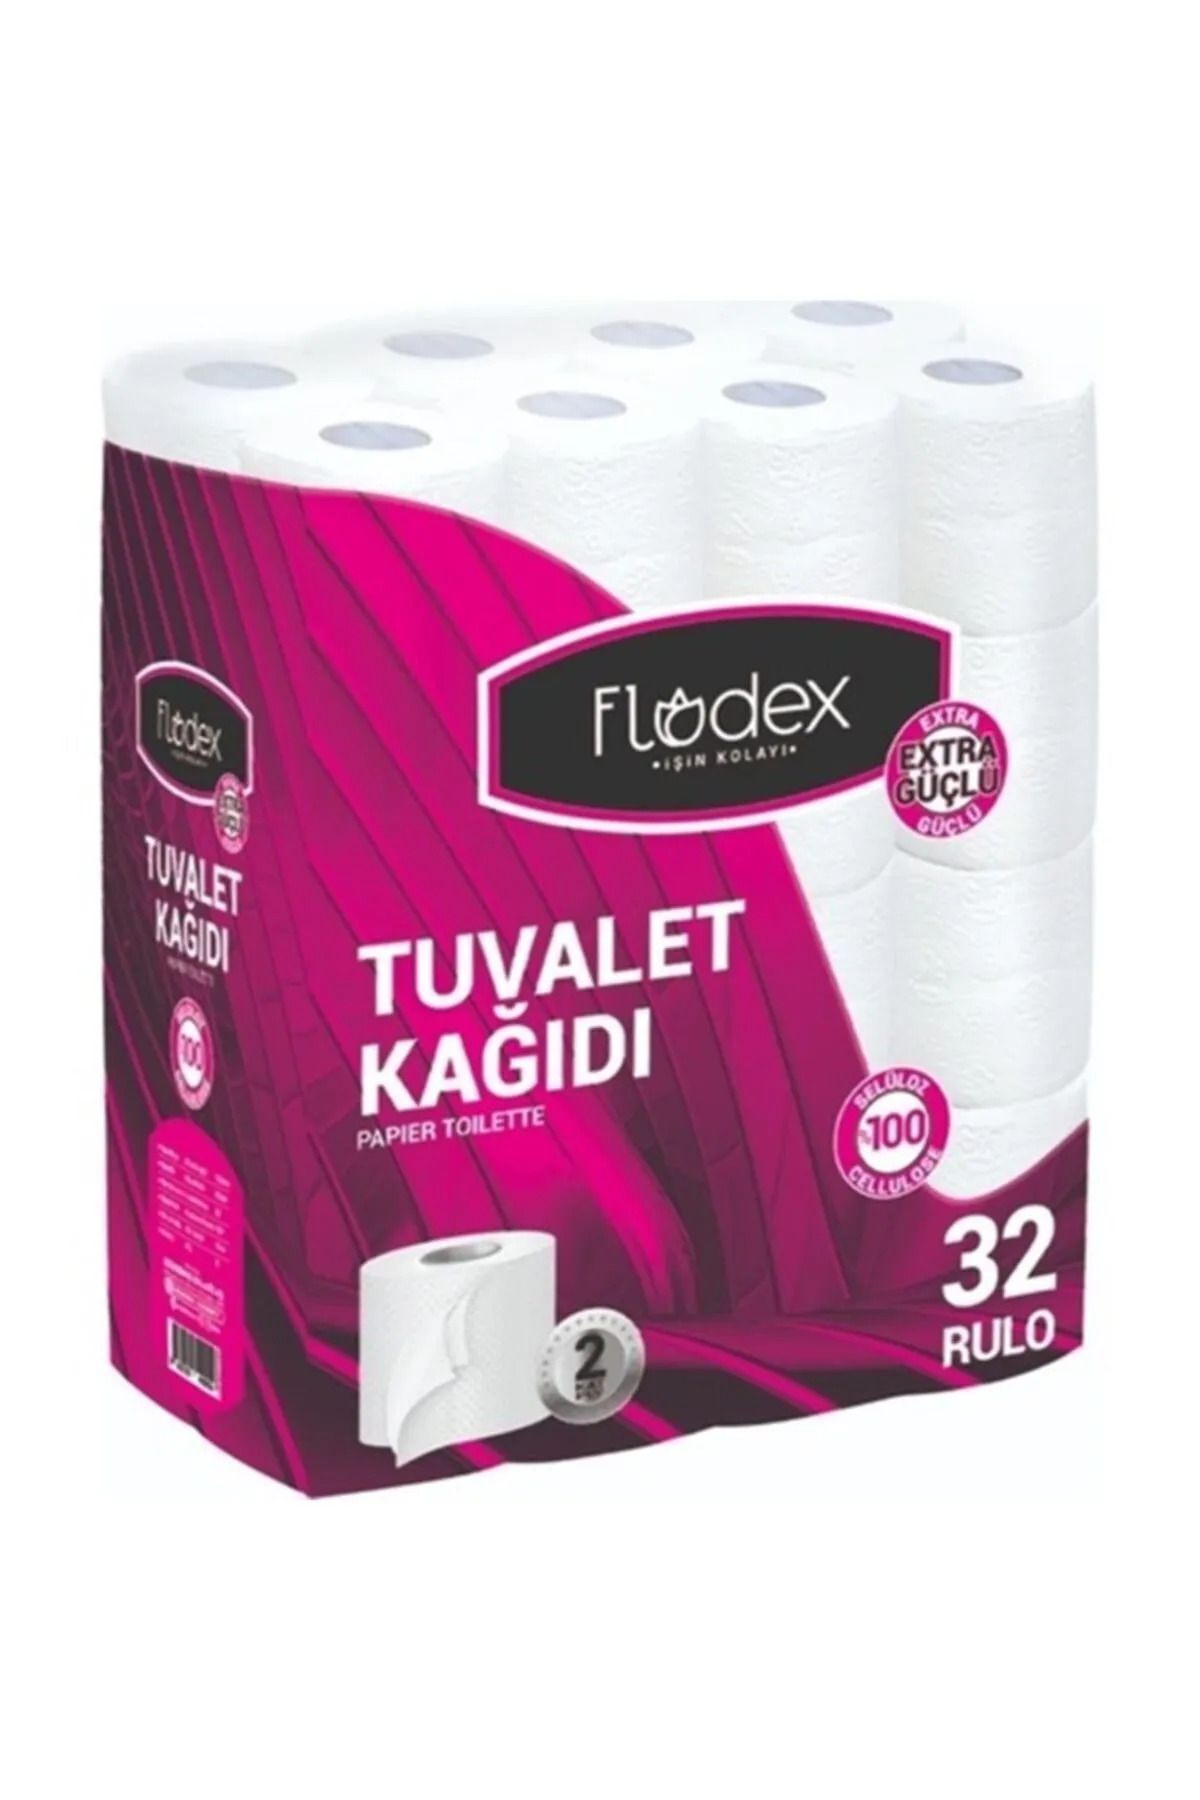 Florex Flodex - Tuvalet Kağıdı 32li - 1 Paket